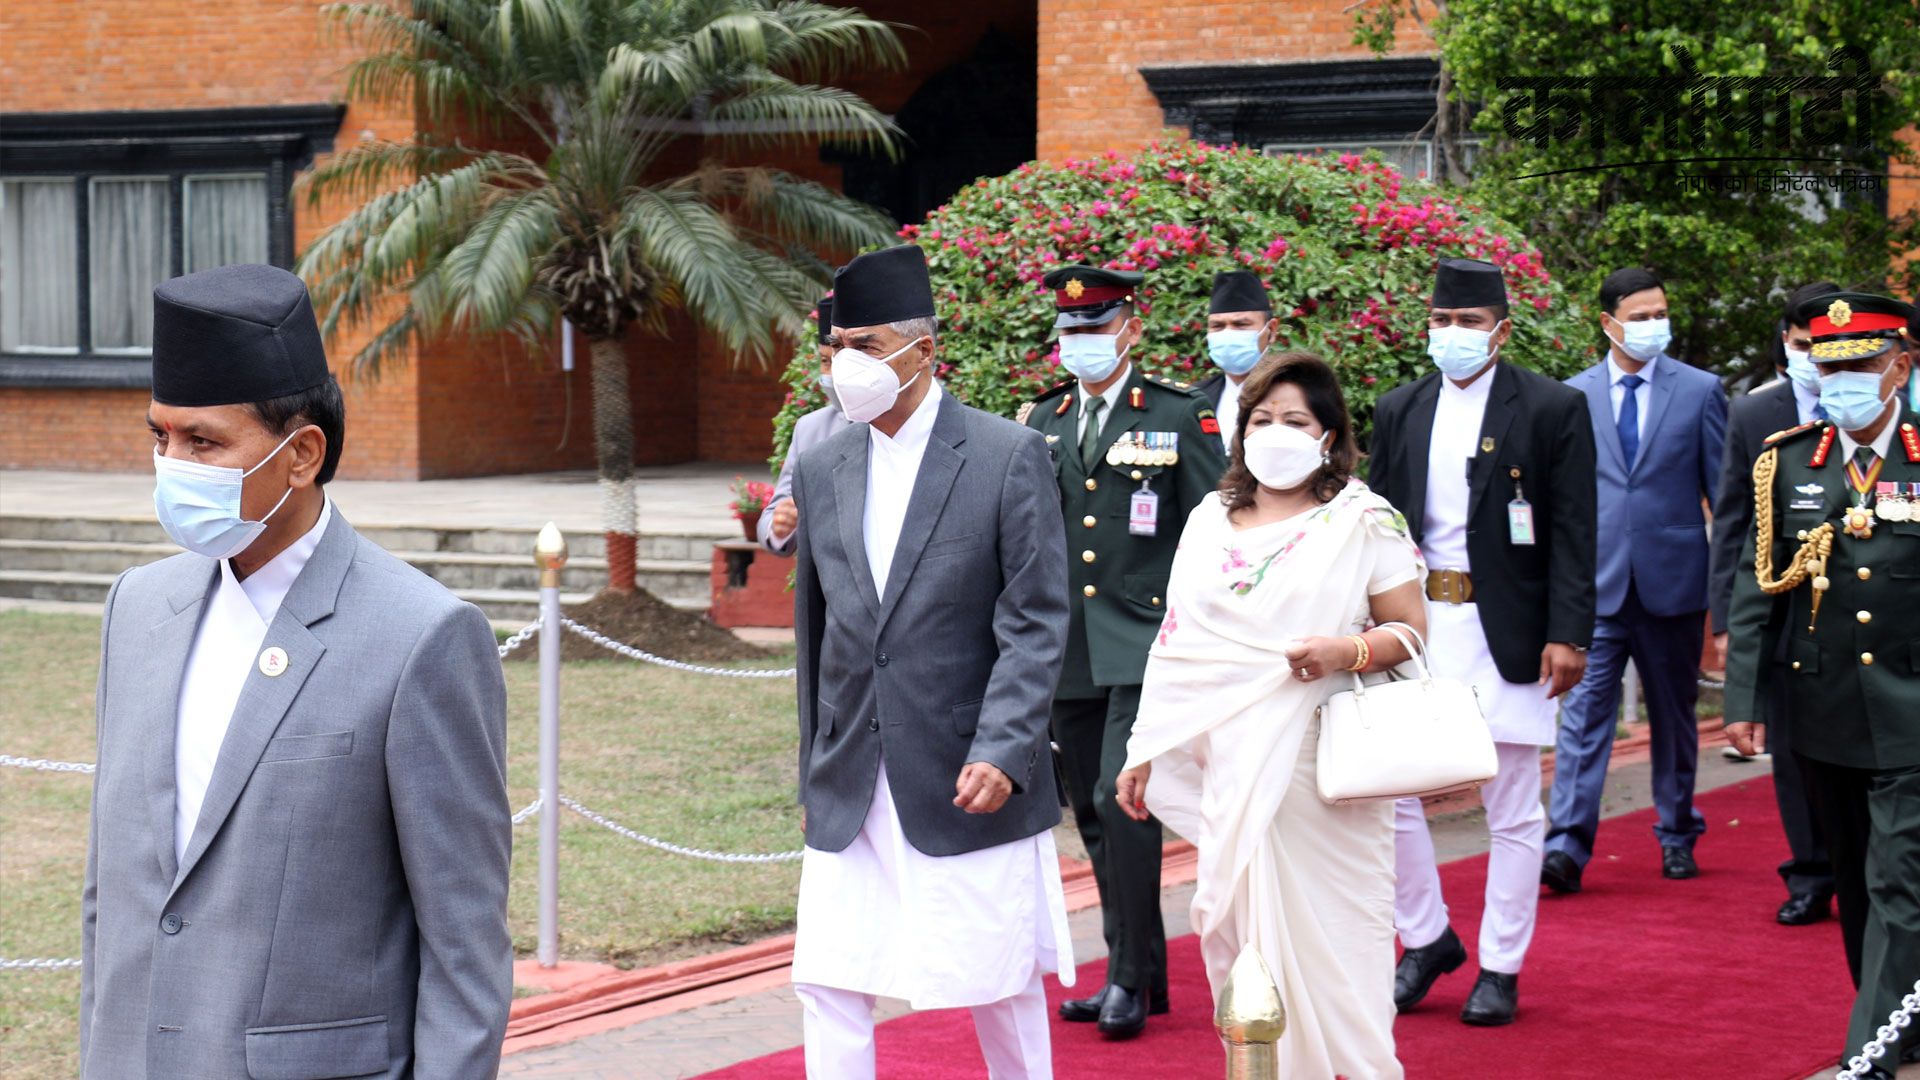 प्रधानमन्त्री देउवाको भारत भ्रमण : आज भारतका प्रधानमन्त्री मोदीसँग भेटवार्ता हुँदै